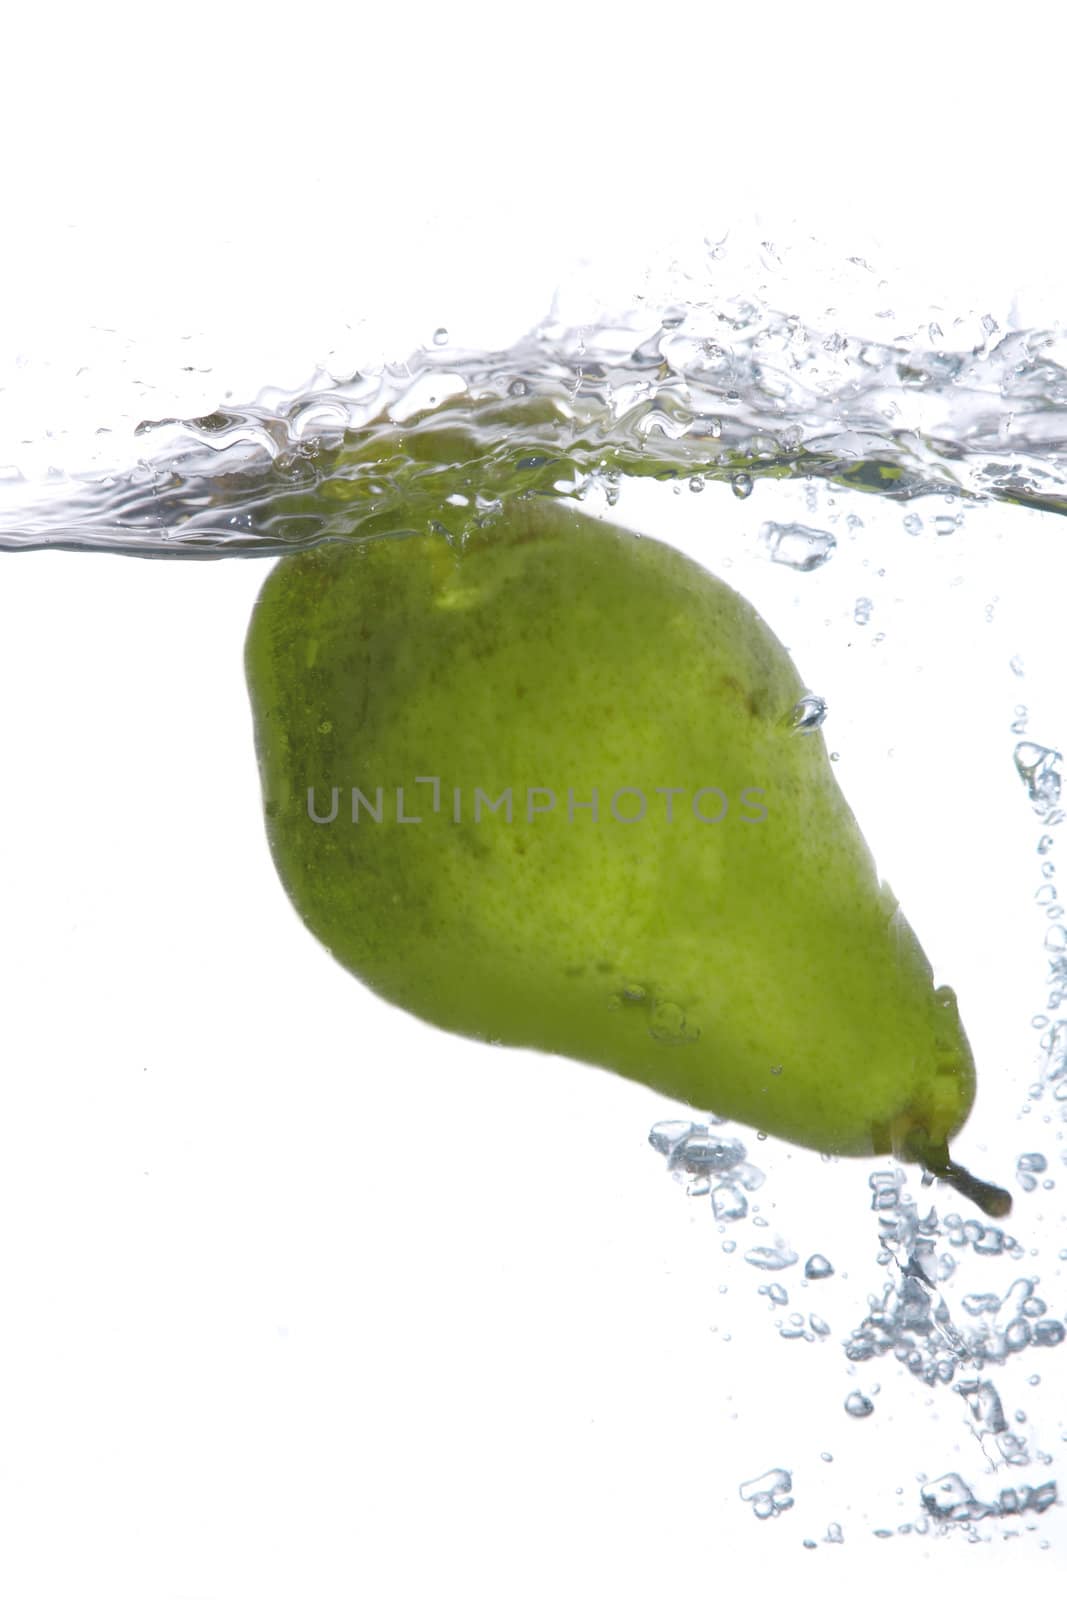 Green pear by velkol